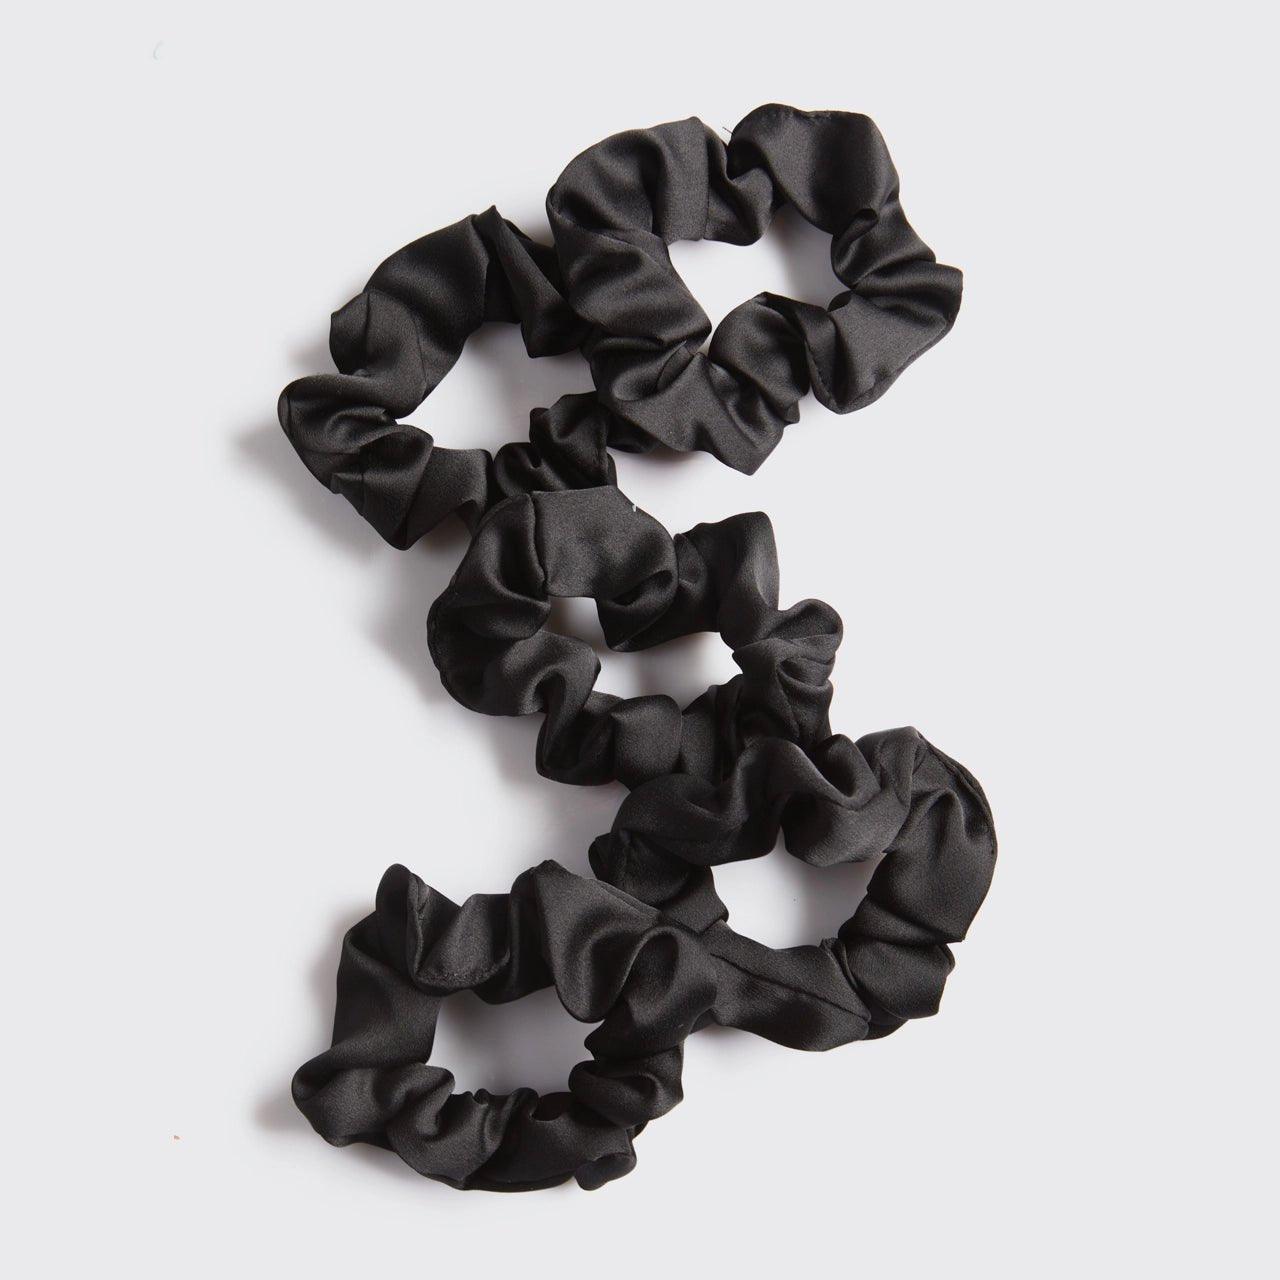 Kitsch Satin Sleep Scrunchie 5pc - Black - Sunshine Curls